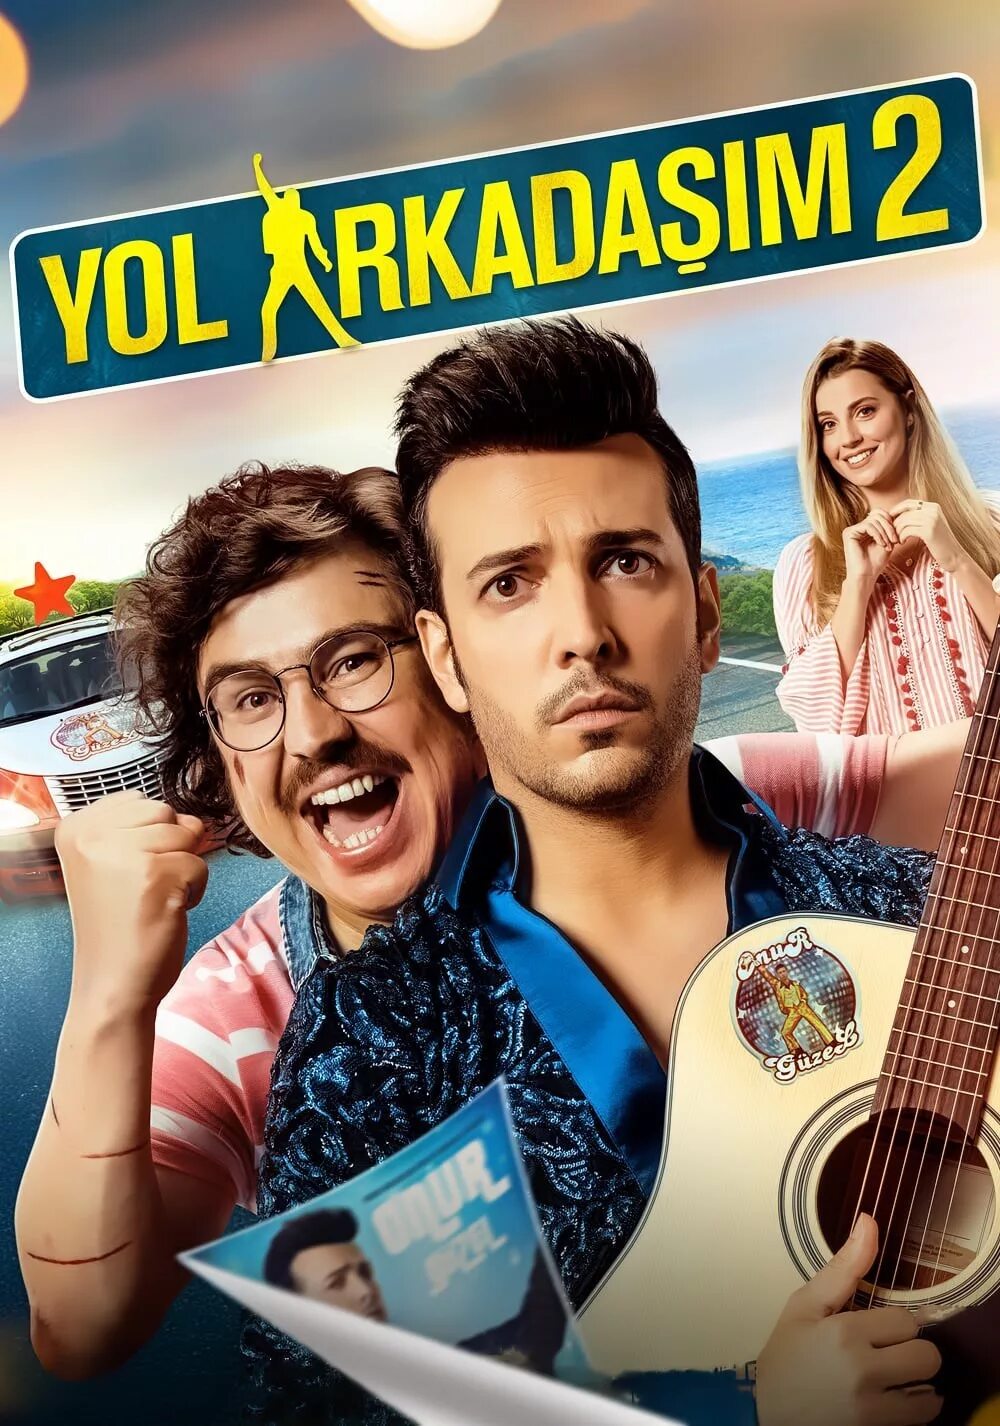 Турецкие комедии. Бесплатные турецкие комедии